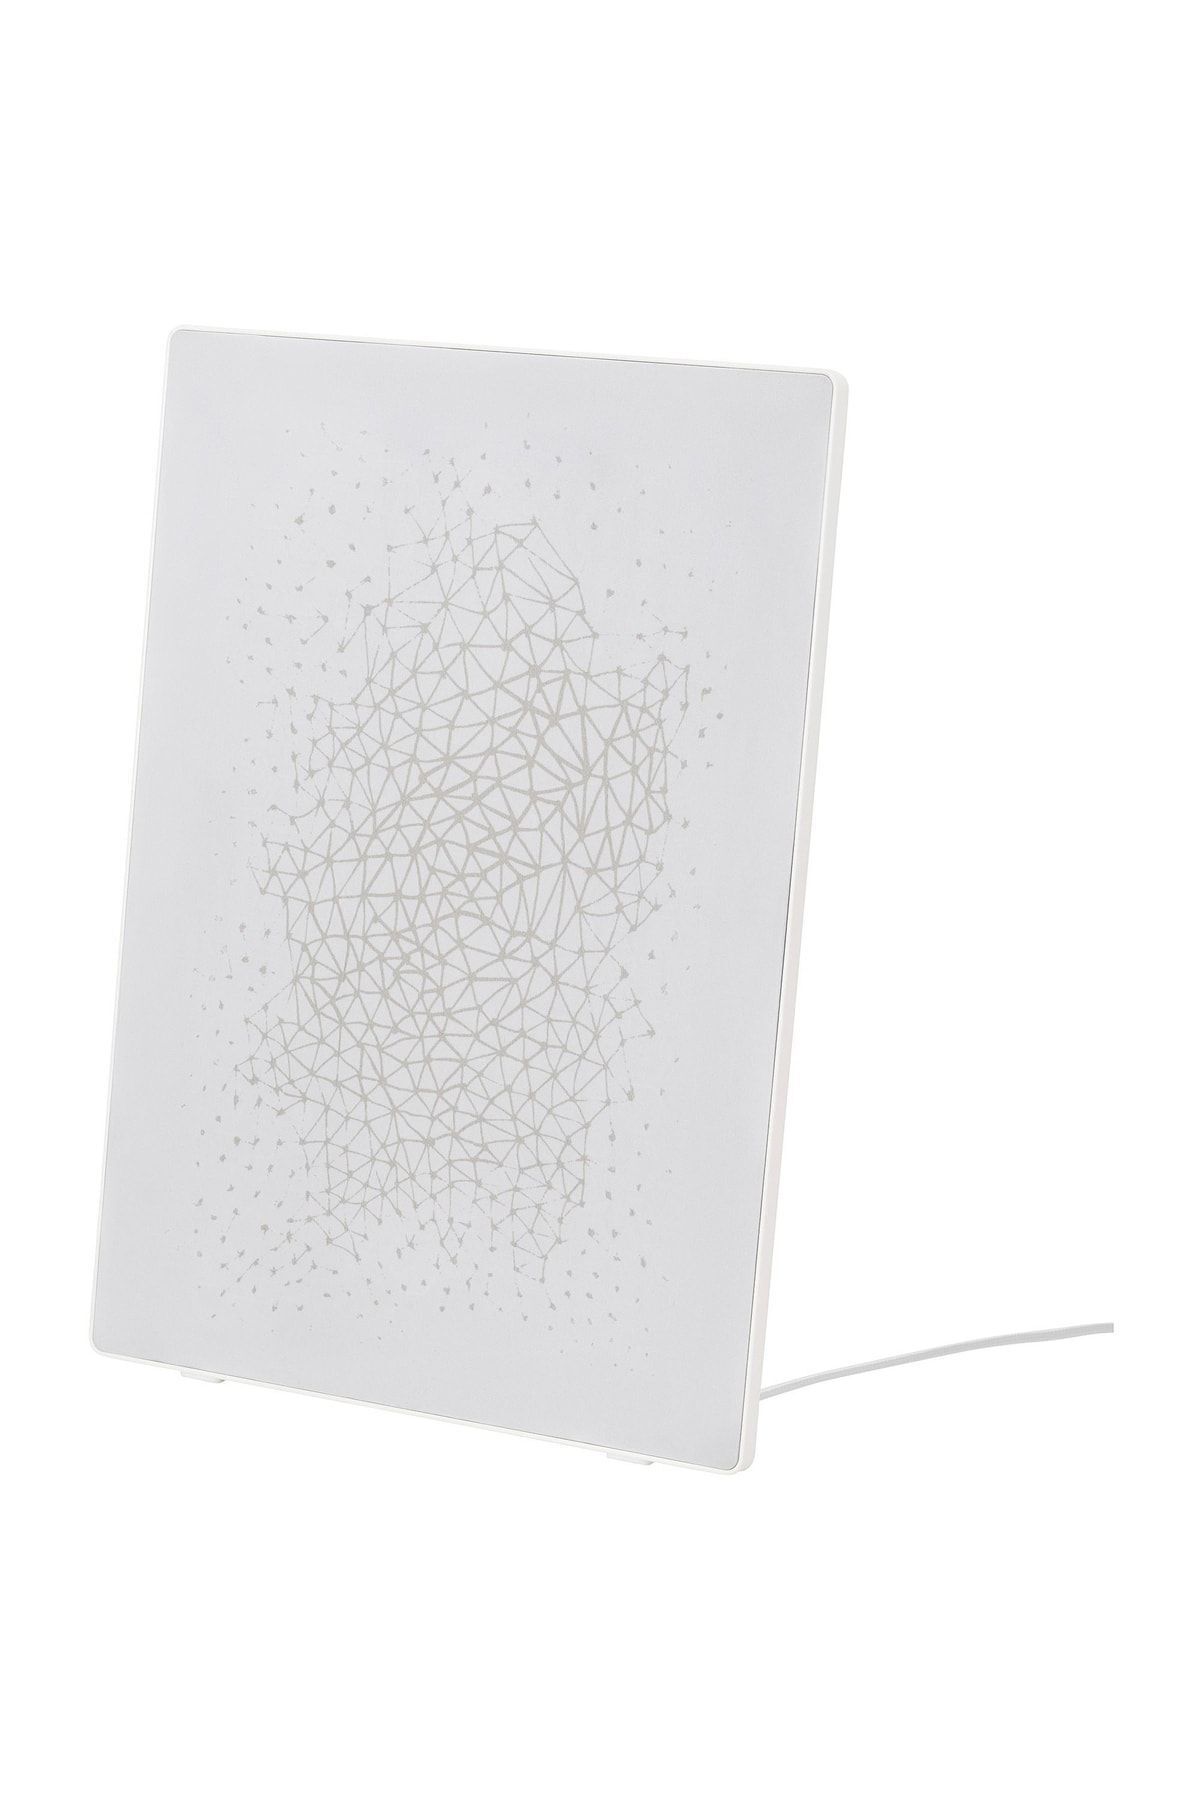 IKEA Symfonısk Wi-fi Hoparlörlü, Resim Çerçeveli Beyaz, 57x41 Cm